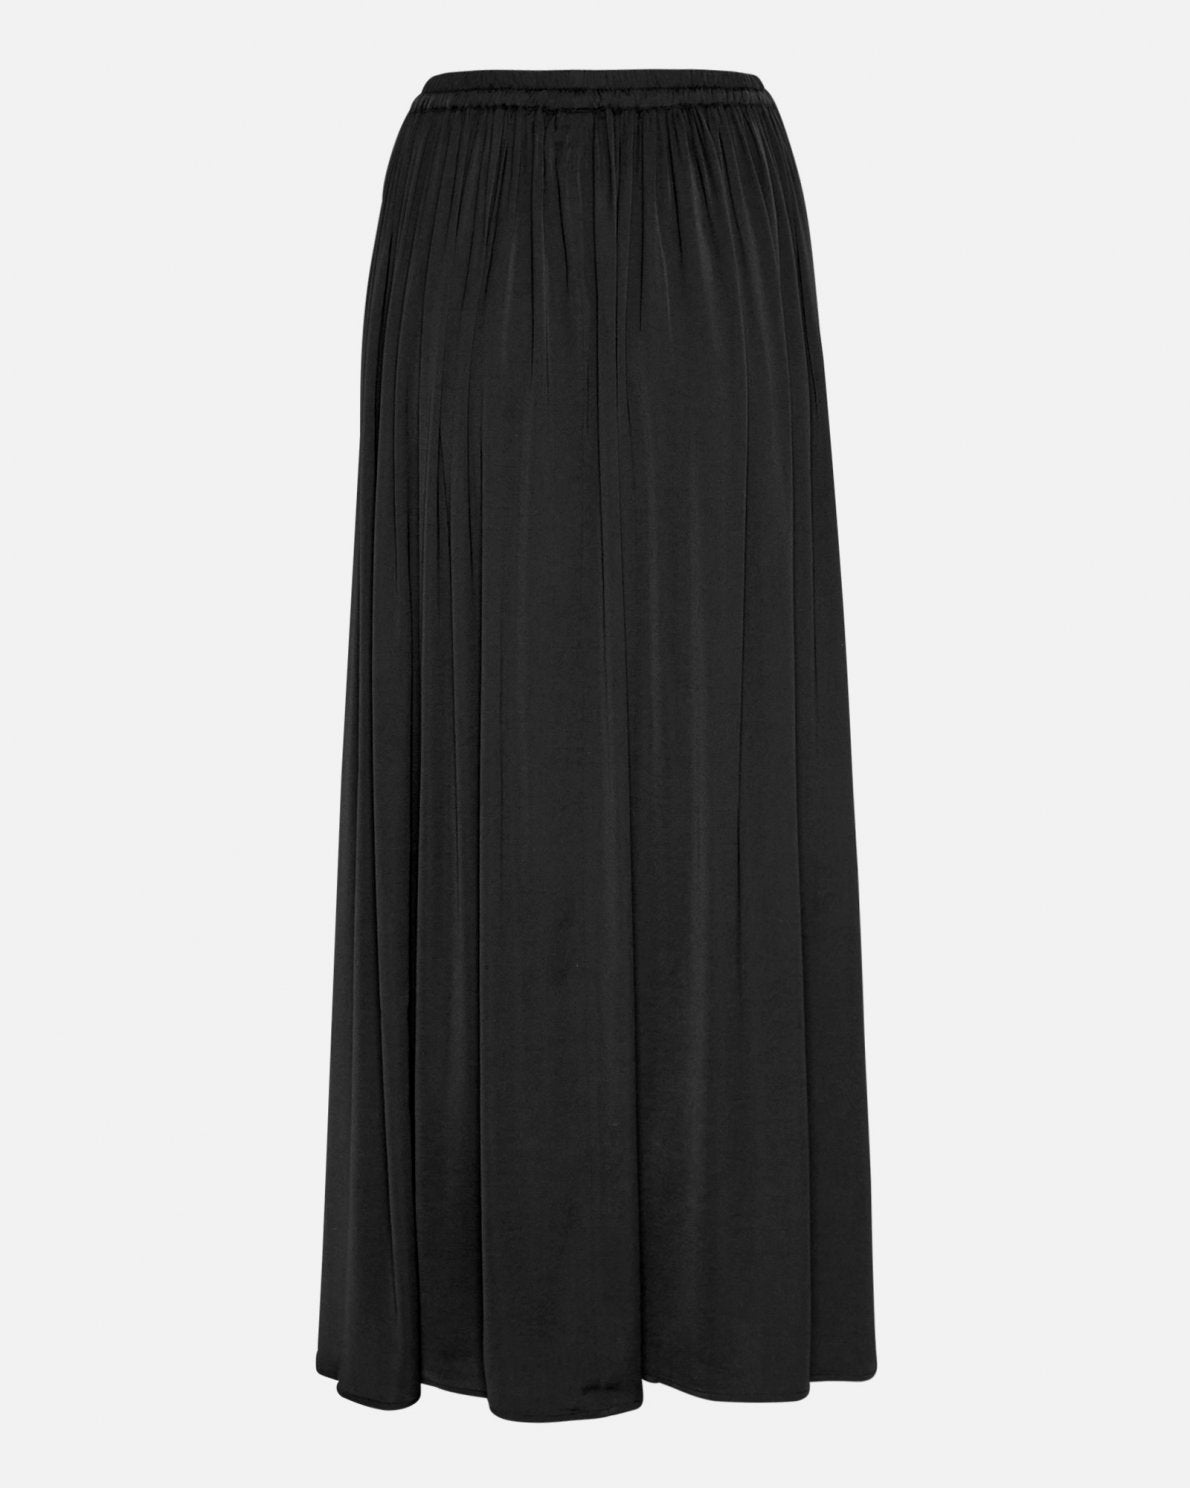 Sanderline Skirt in Black